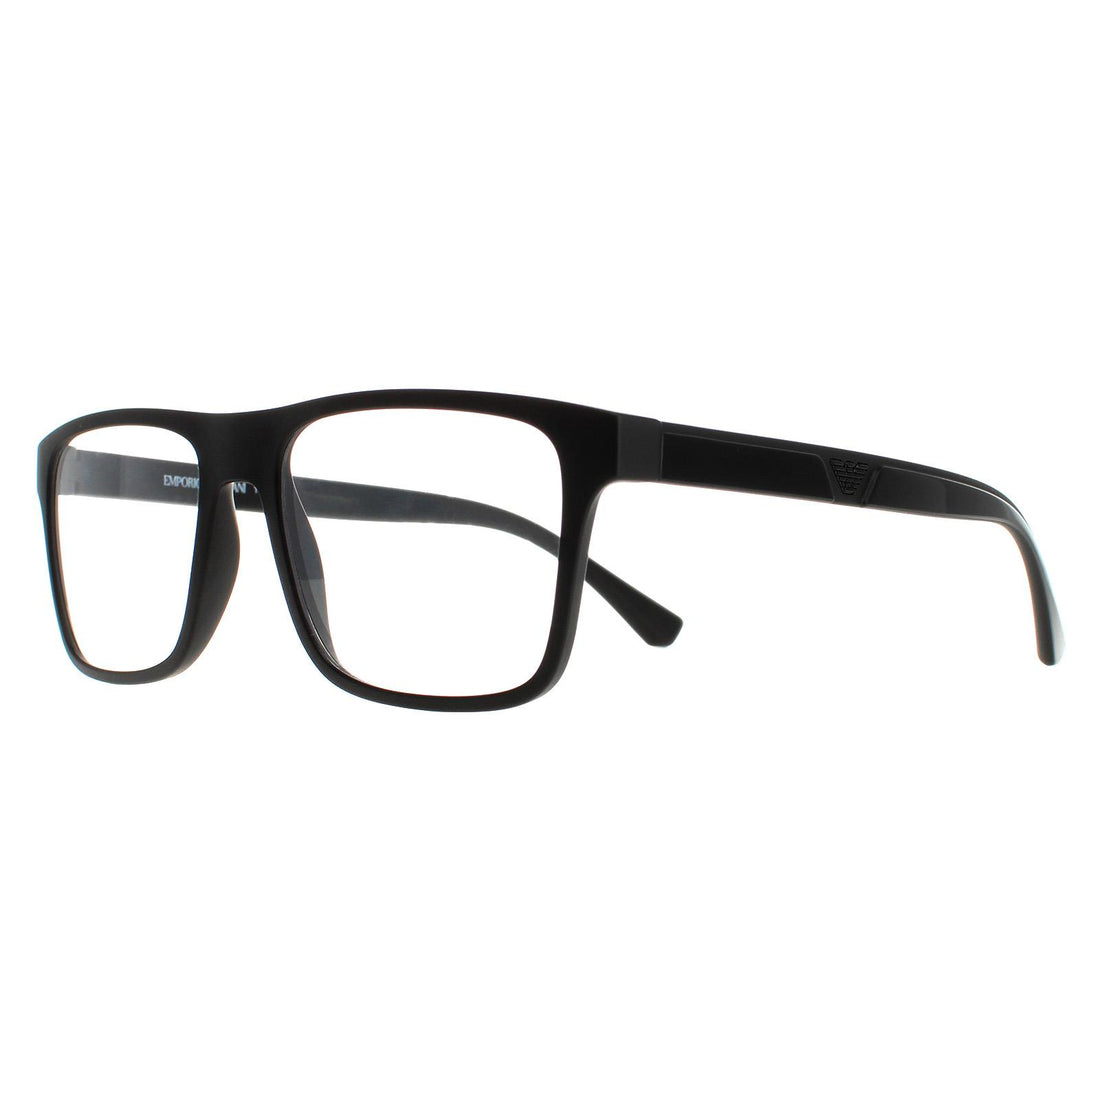 Emporio Armani Men's EA4115 5042/1W Matte Black w/ two Clip-ons Sunglasses  54mm 8053672868777 | eBay